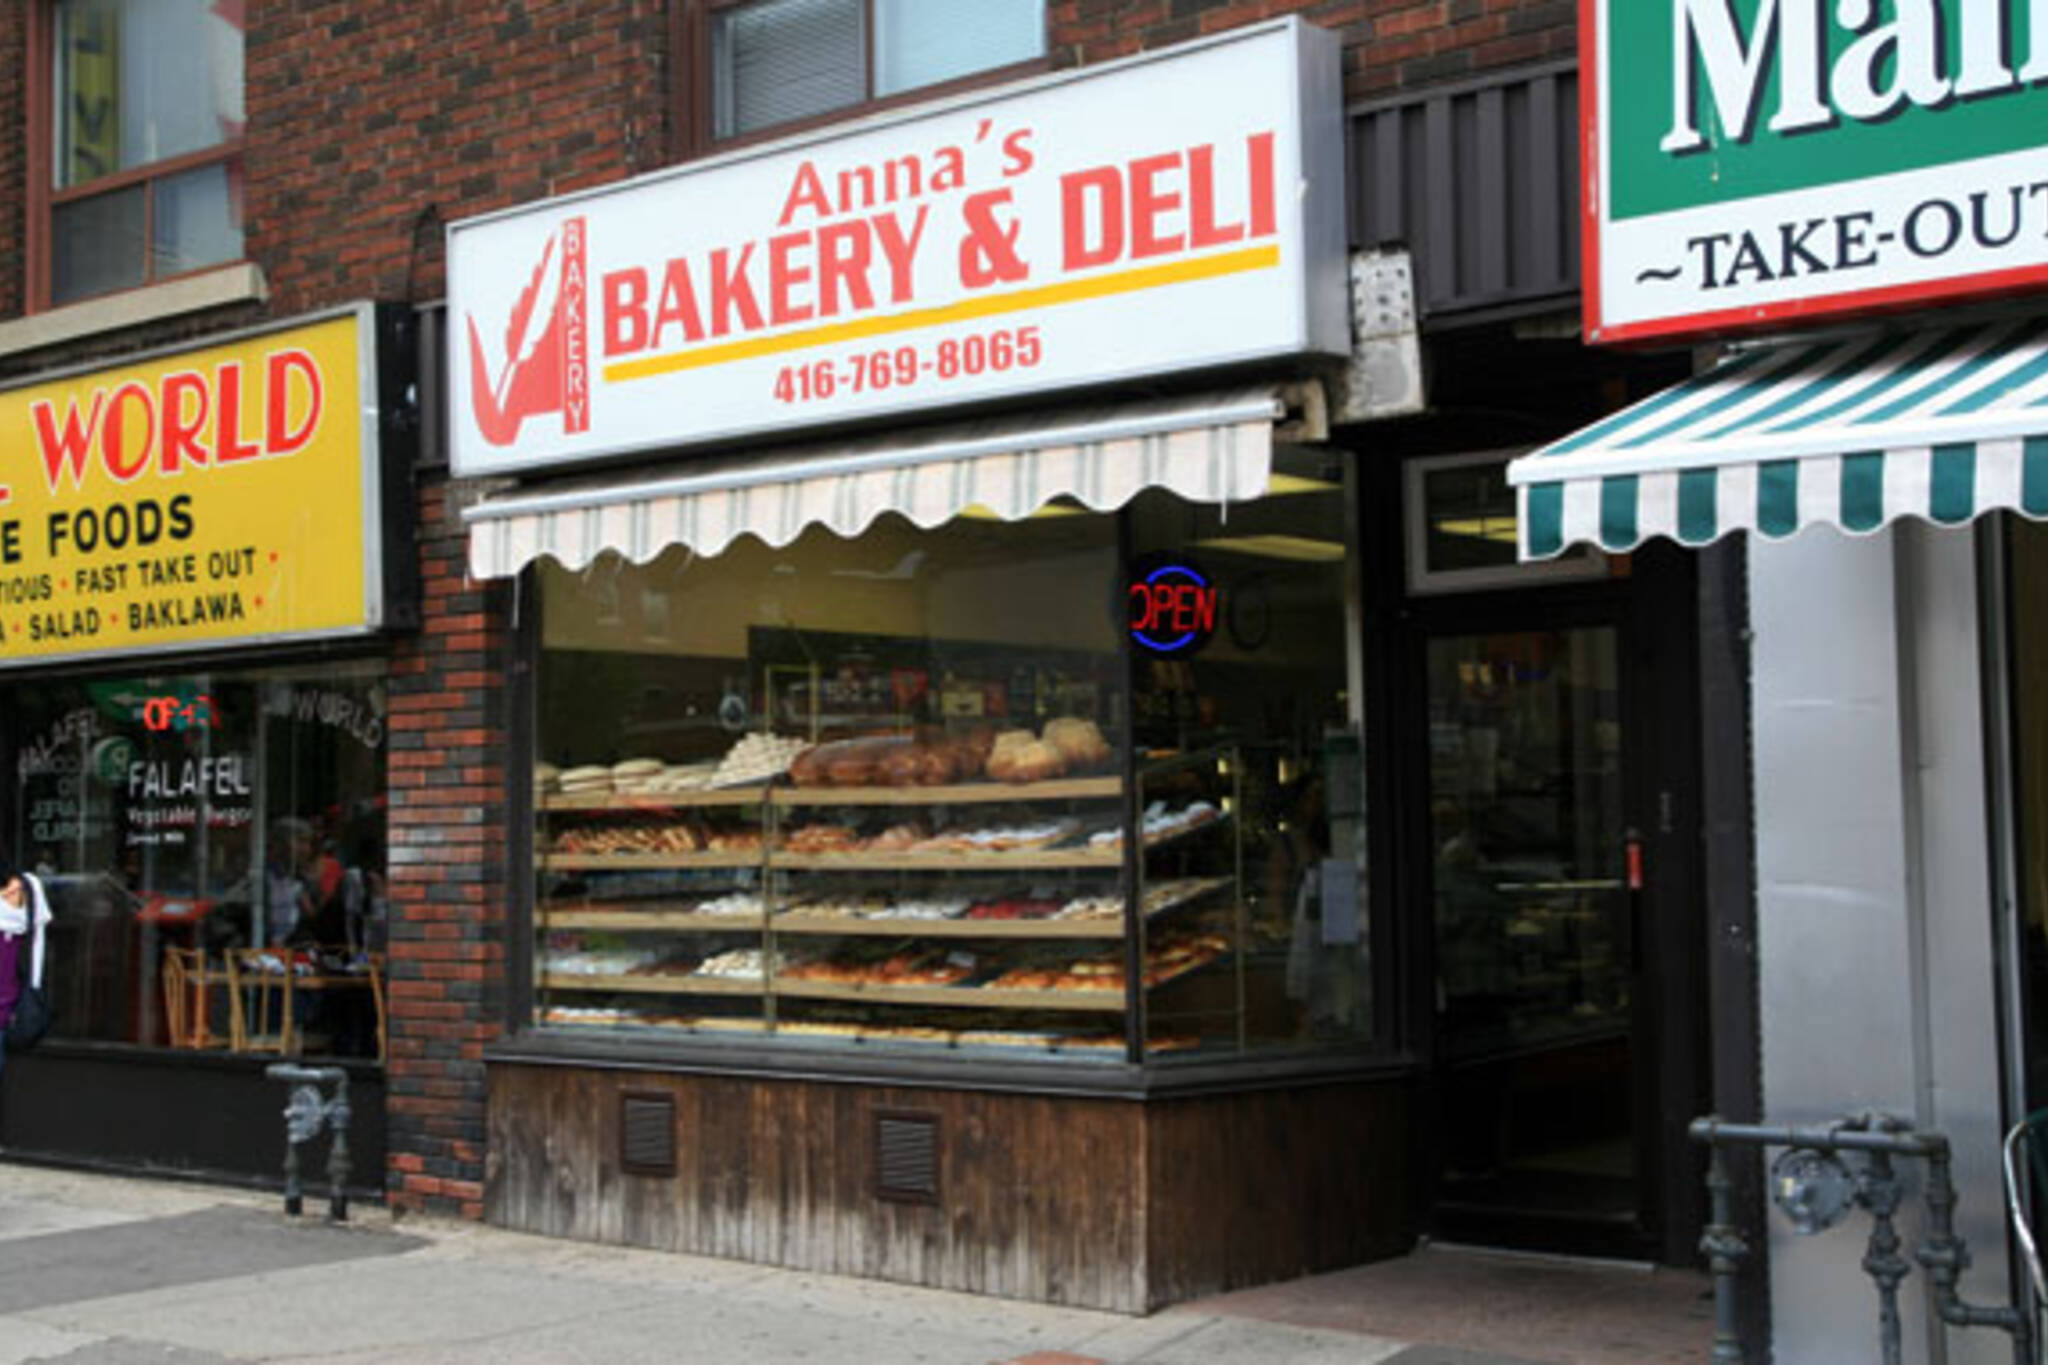 Anna's Bakery & Deli